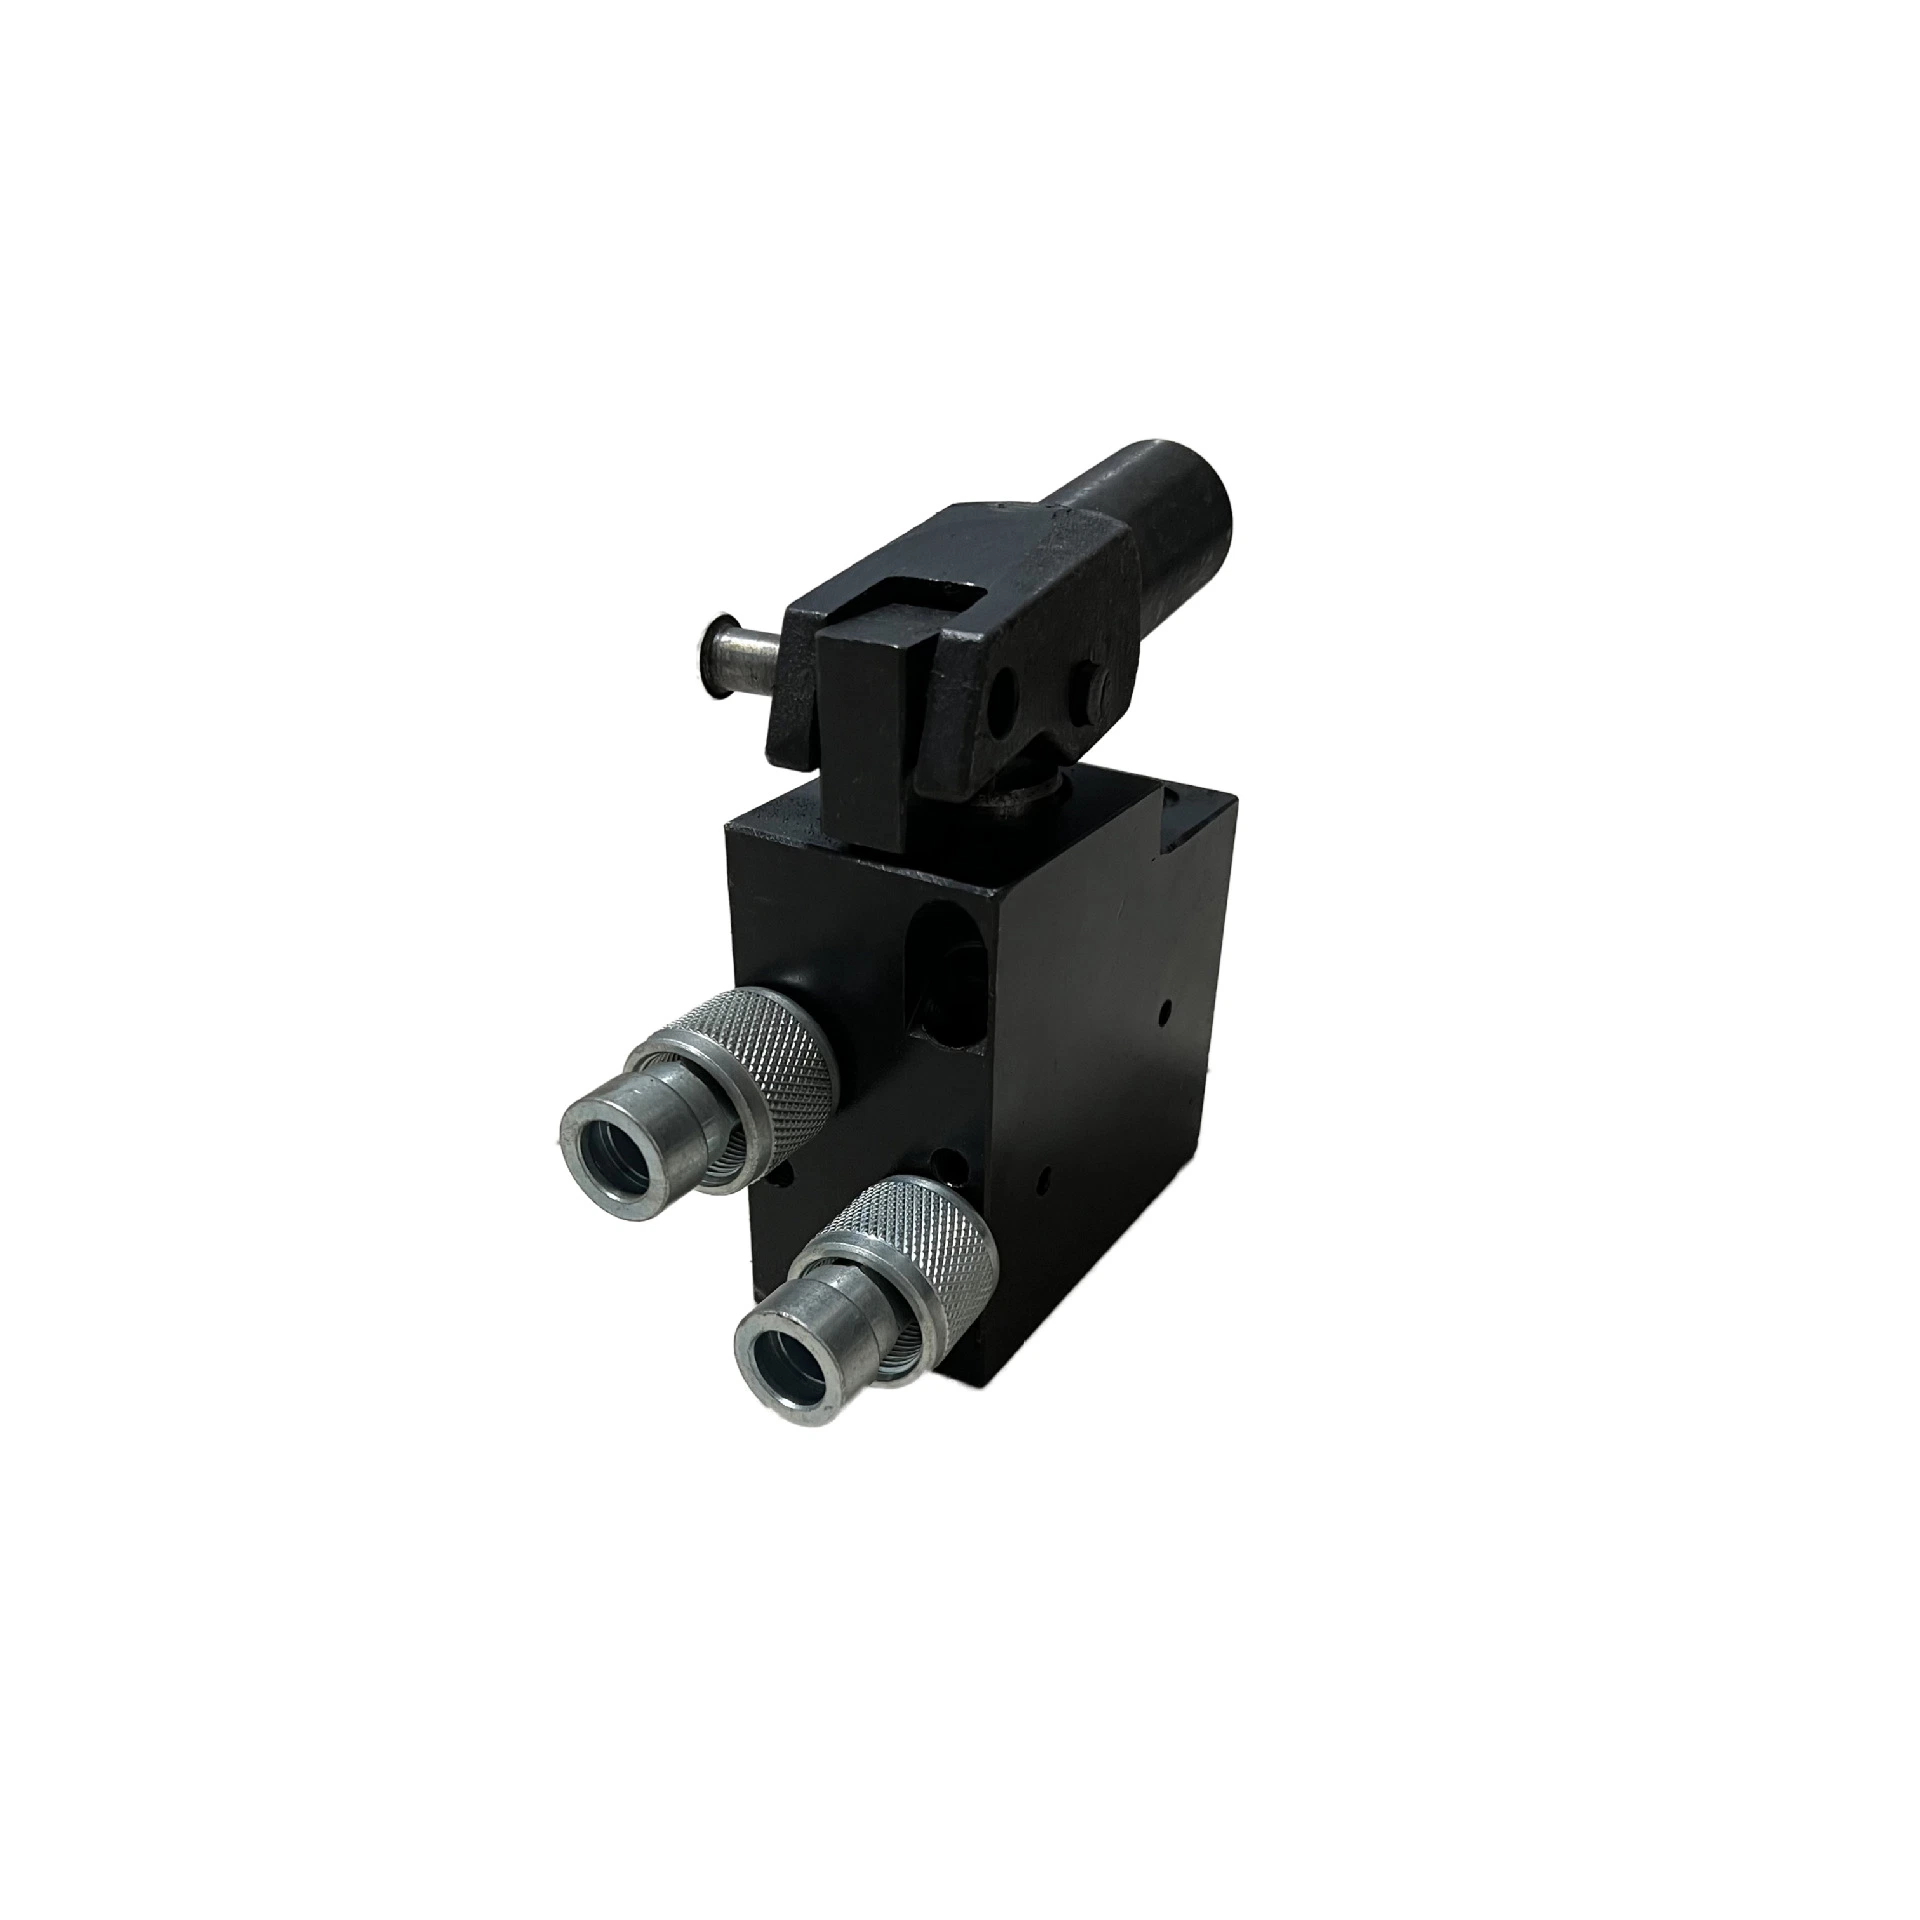 Manual Hydraulic Pump Hydraulic Mechanical Accessories